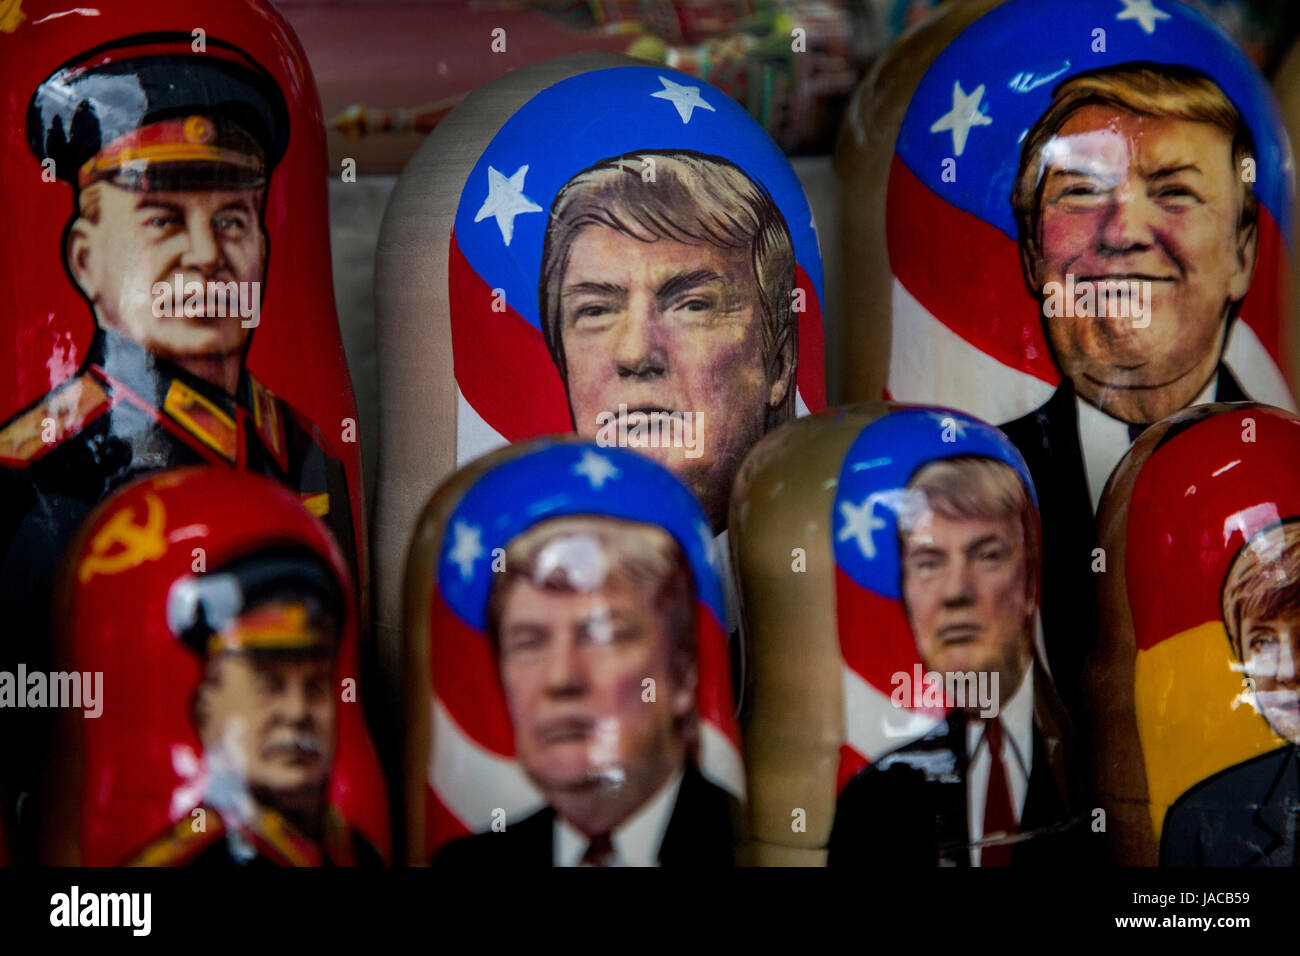 Russische traditionelle Spielwaren - Matroschka mit einem Porträt von Donald Trump in Souvenir-Kiosk auf dem Roten Platz in Moskau, Russland Stockfoto